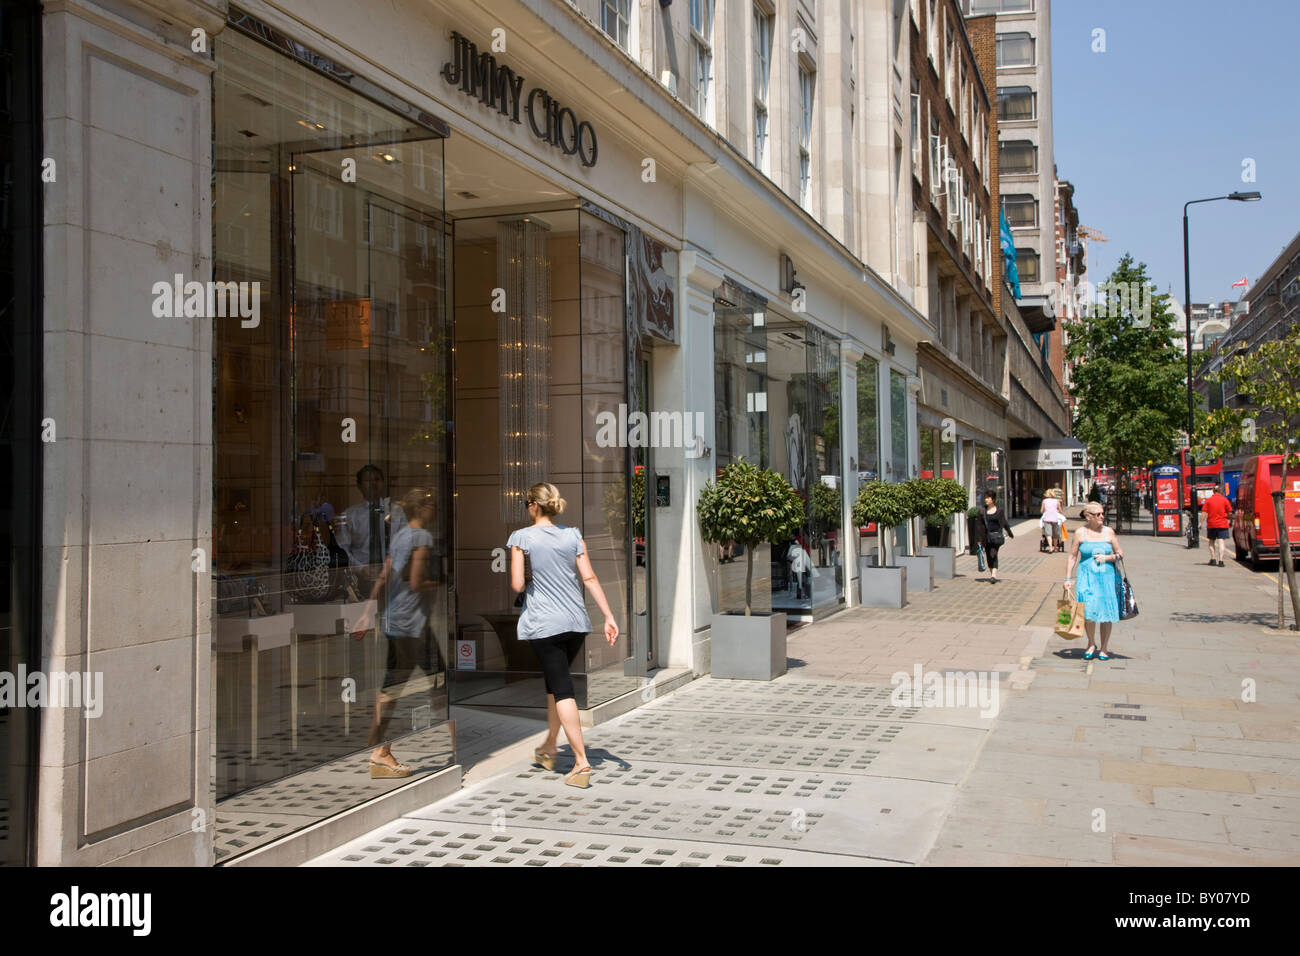 Jimmy Choo shop on Sloane Street in Knightsbridge Stock Photo